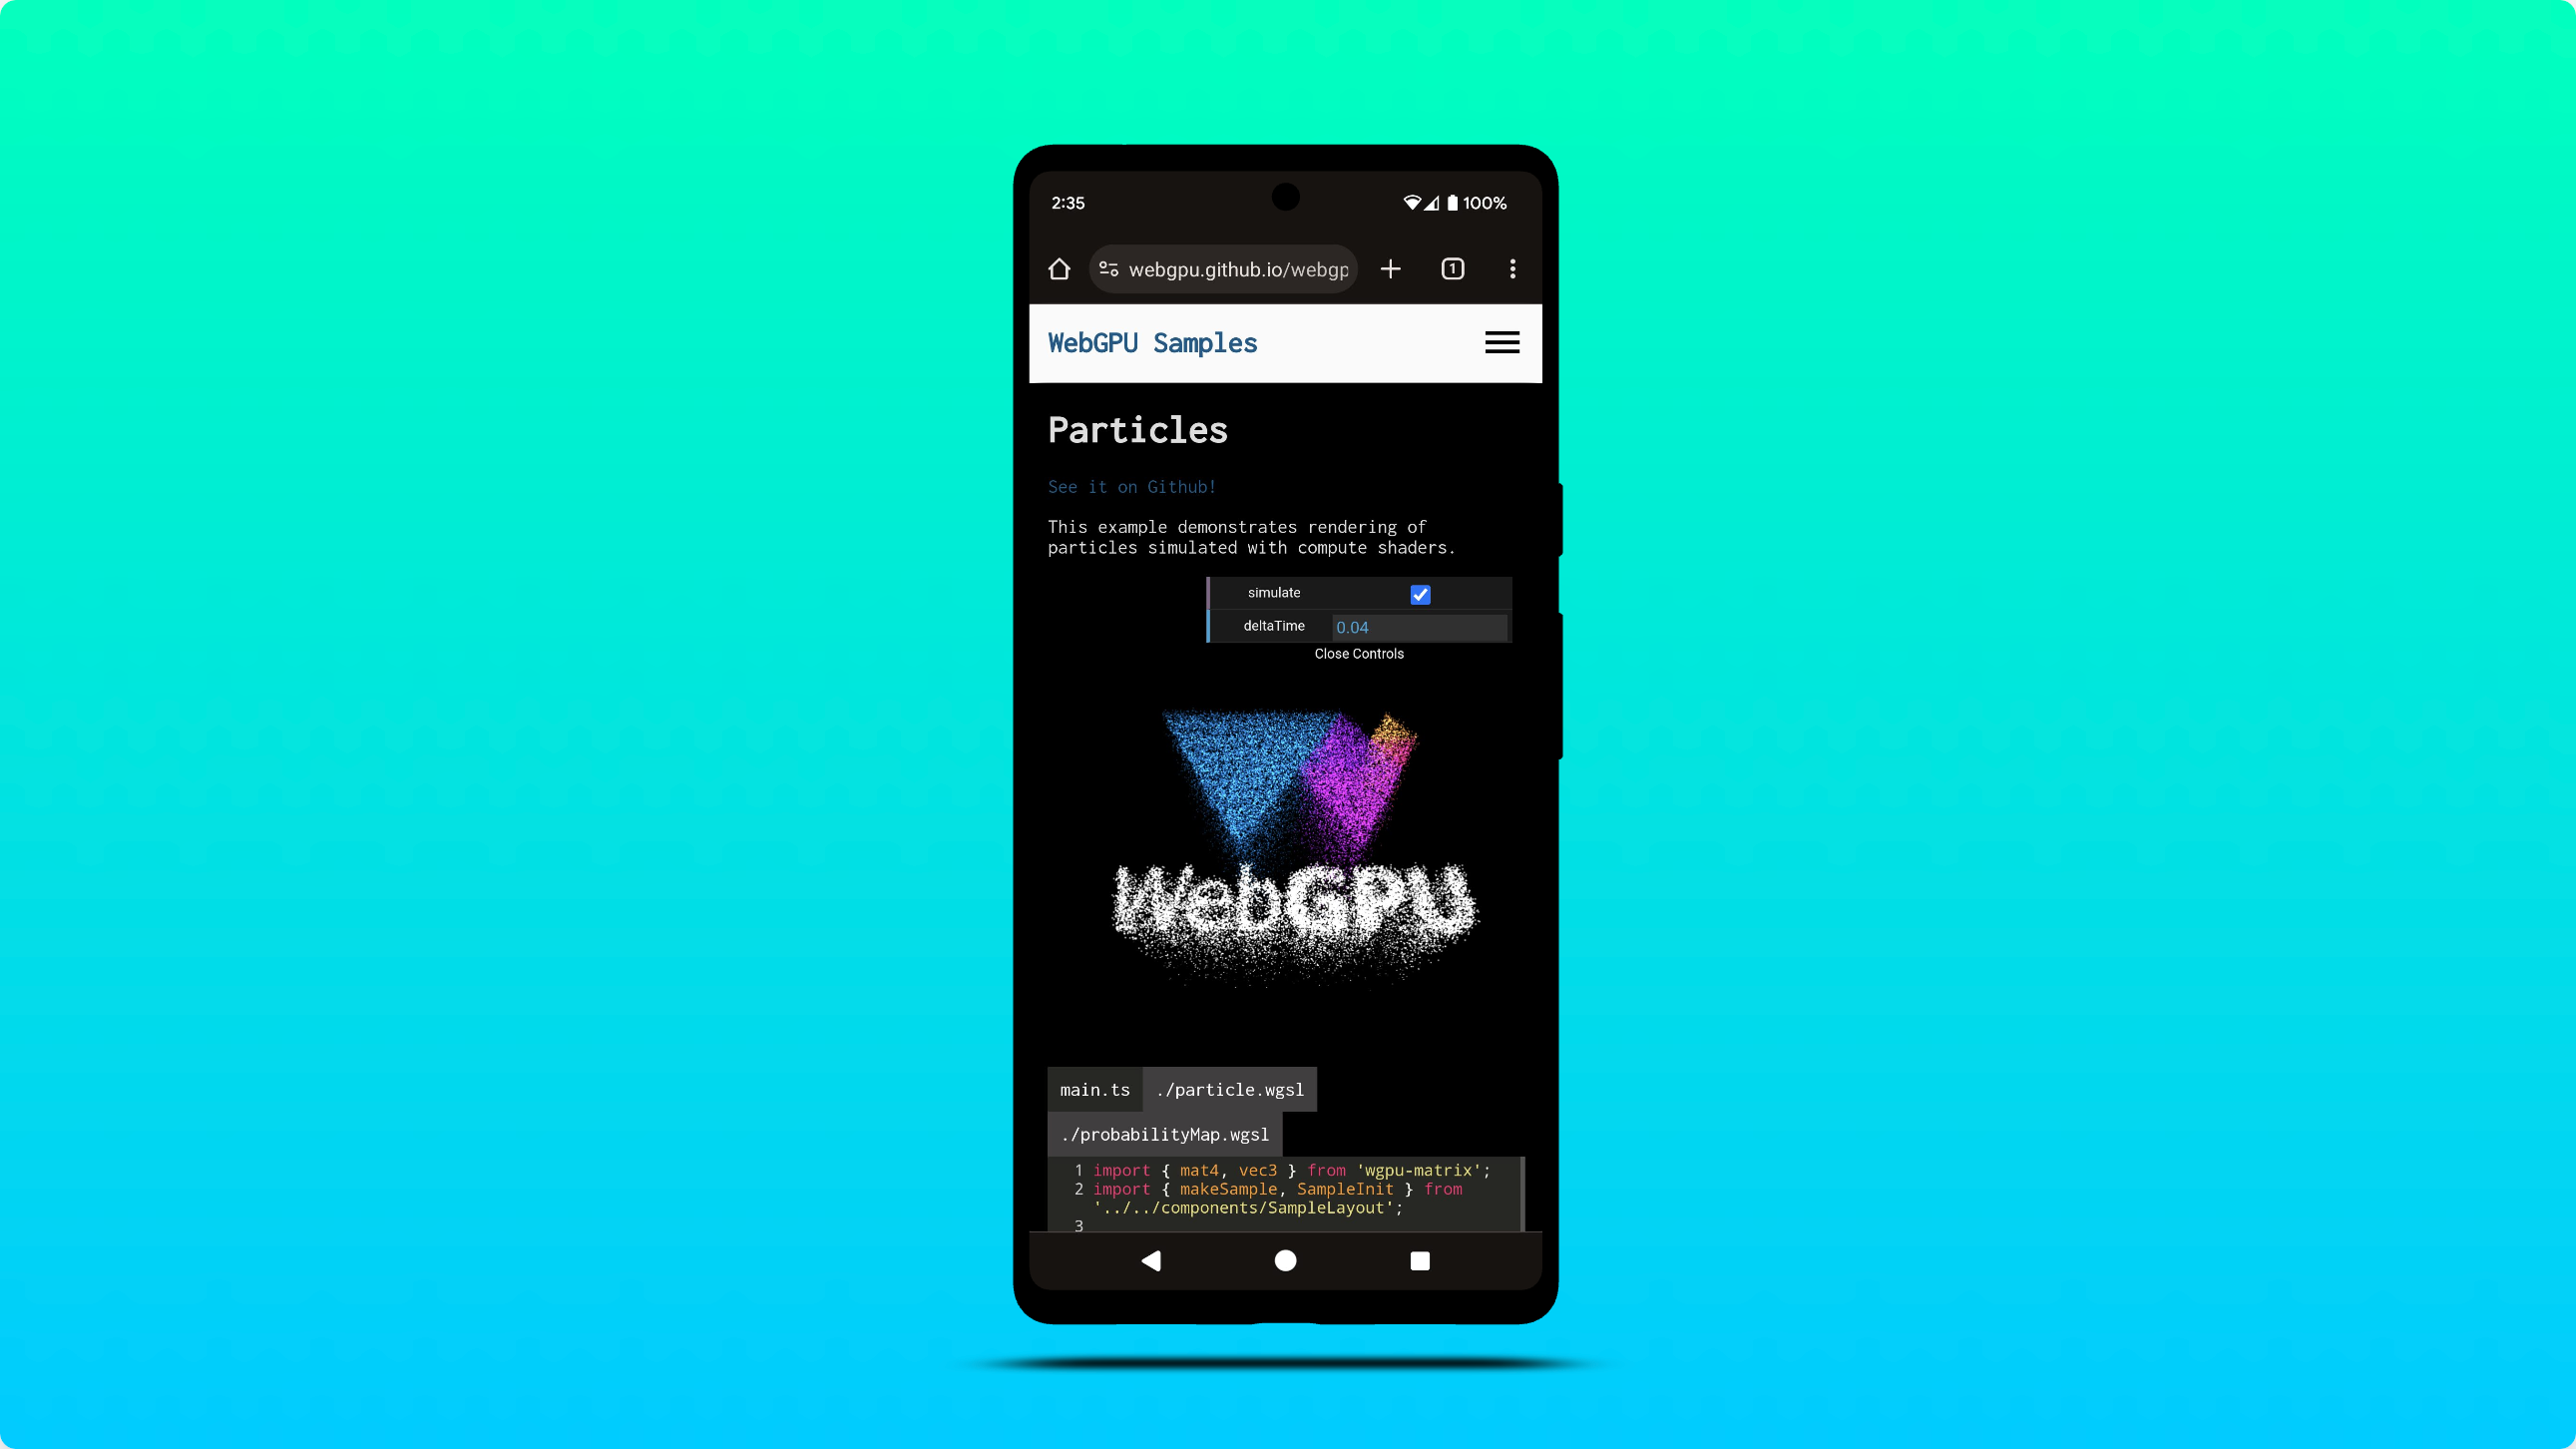 Zrzut ekranu pokazujący przykładową platformę WebGPU działającą w Chrome na Androida.